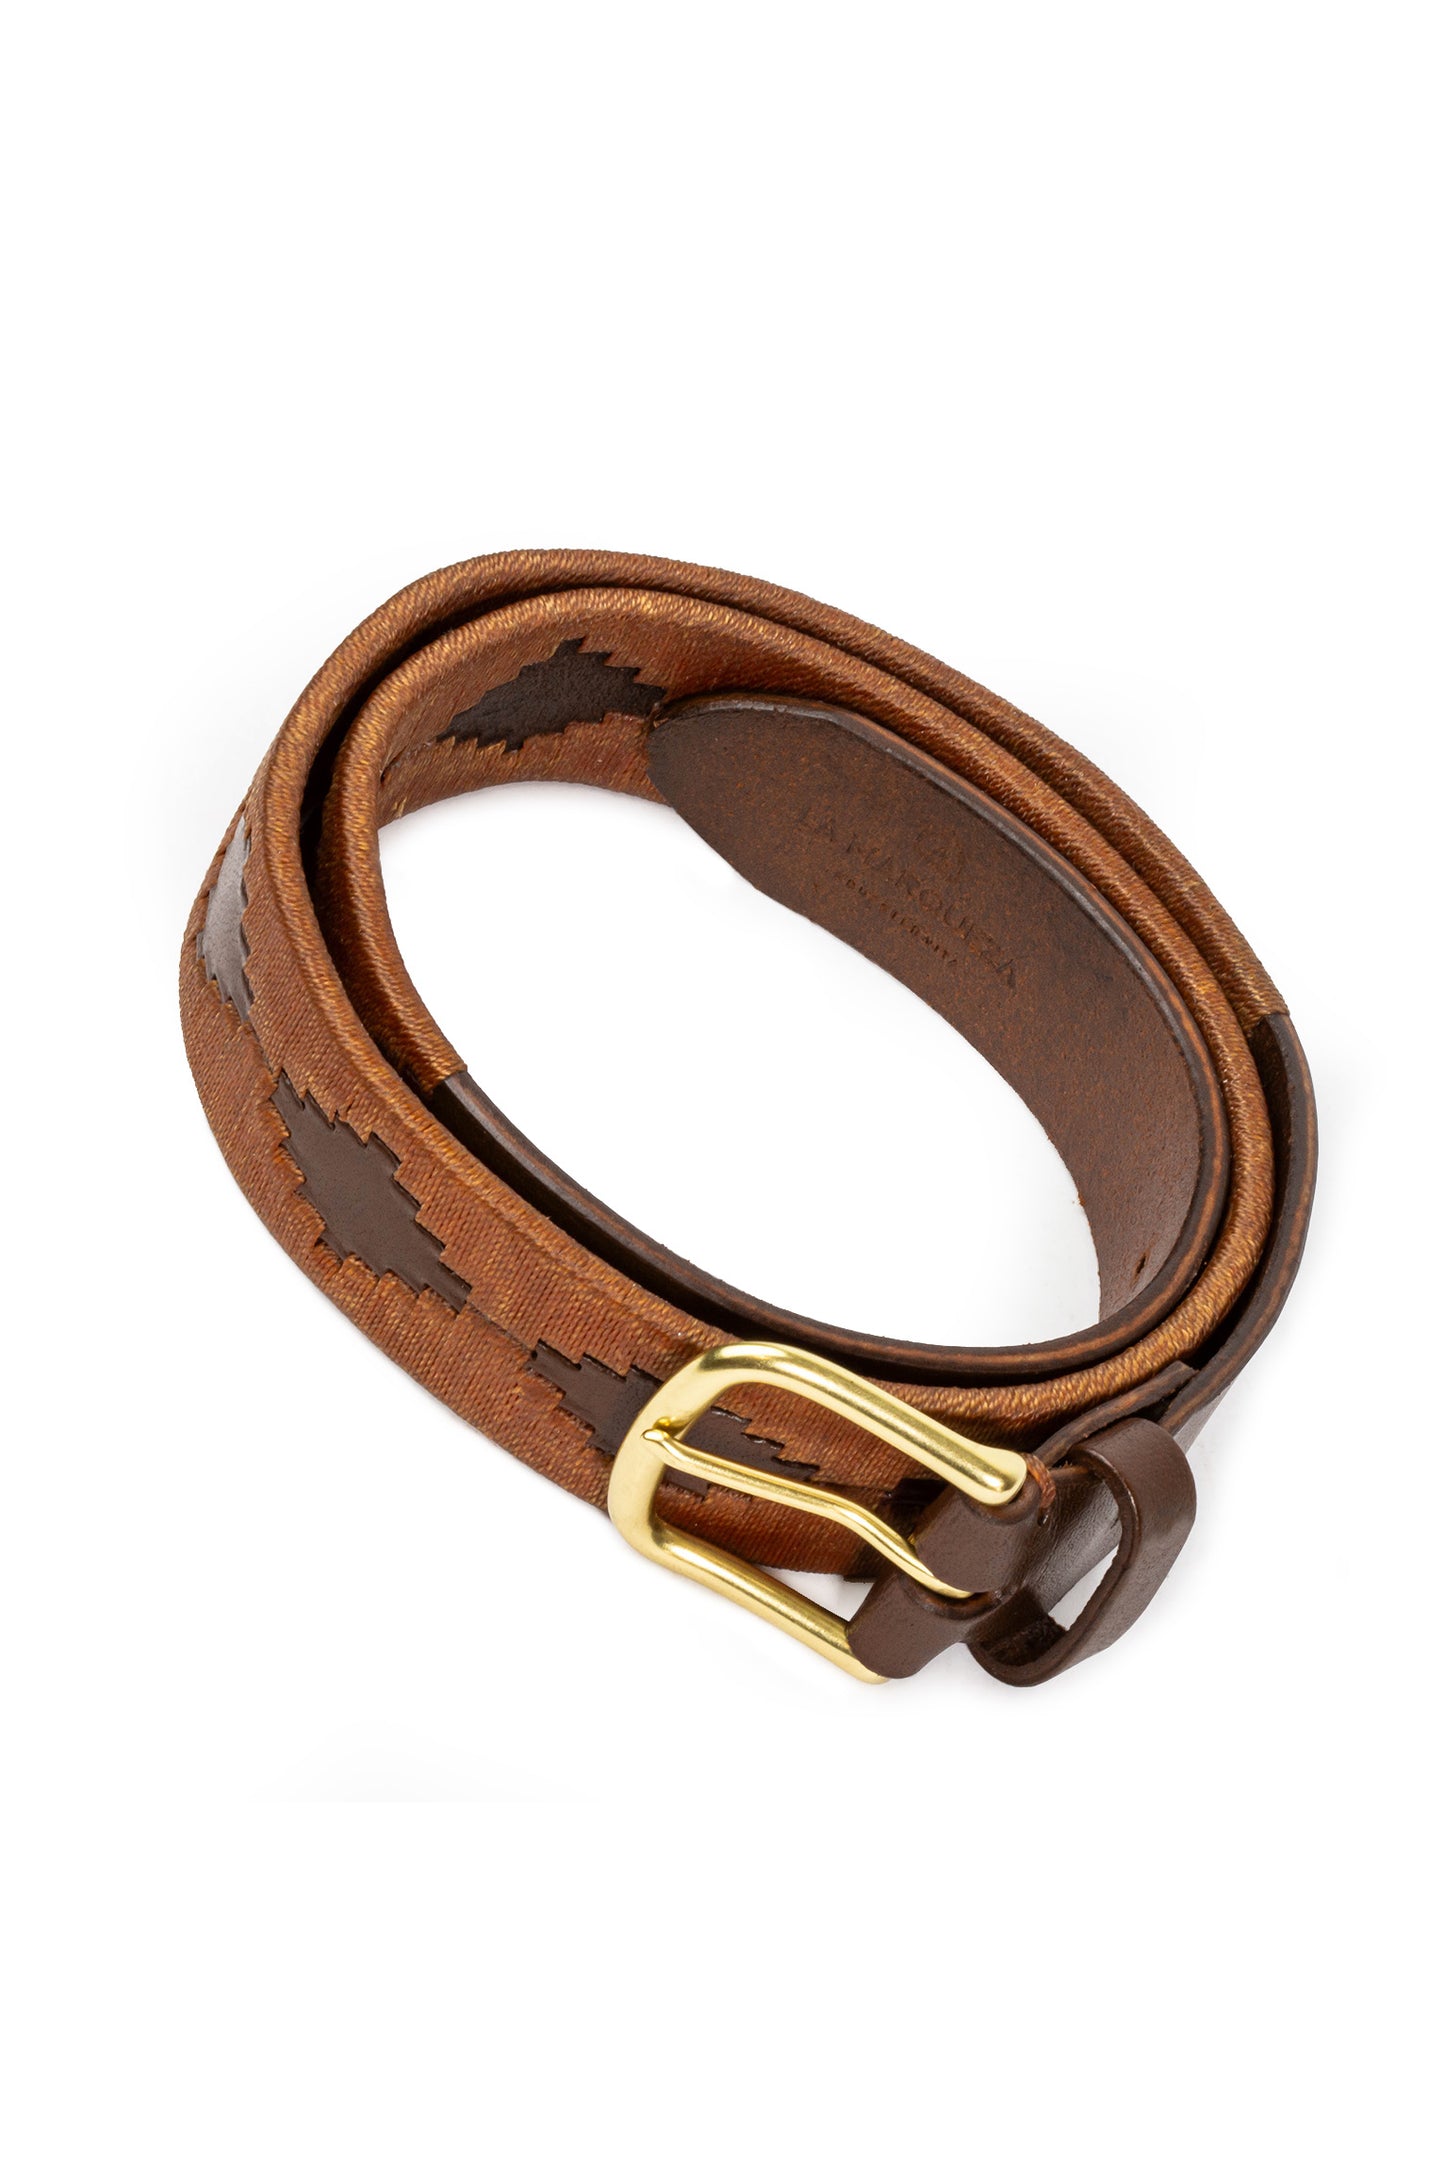 Caramel Leather Handcrafted Belt